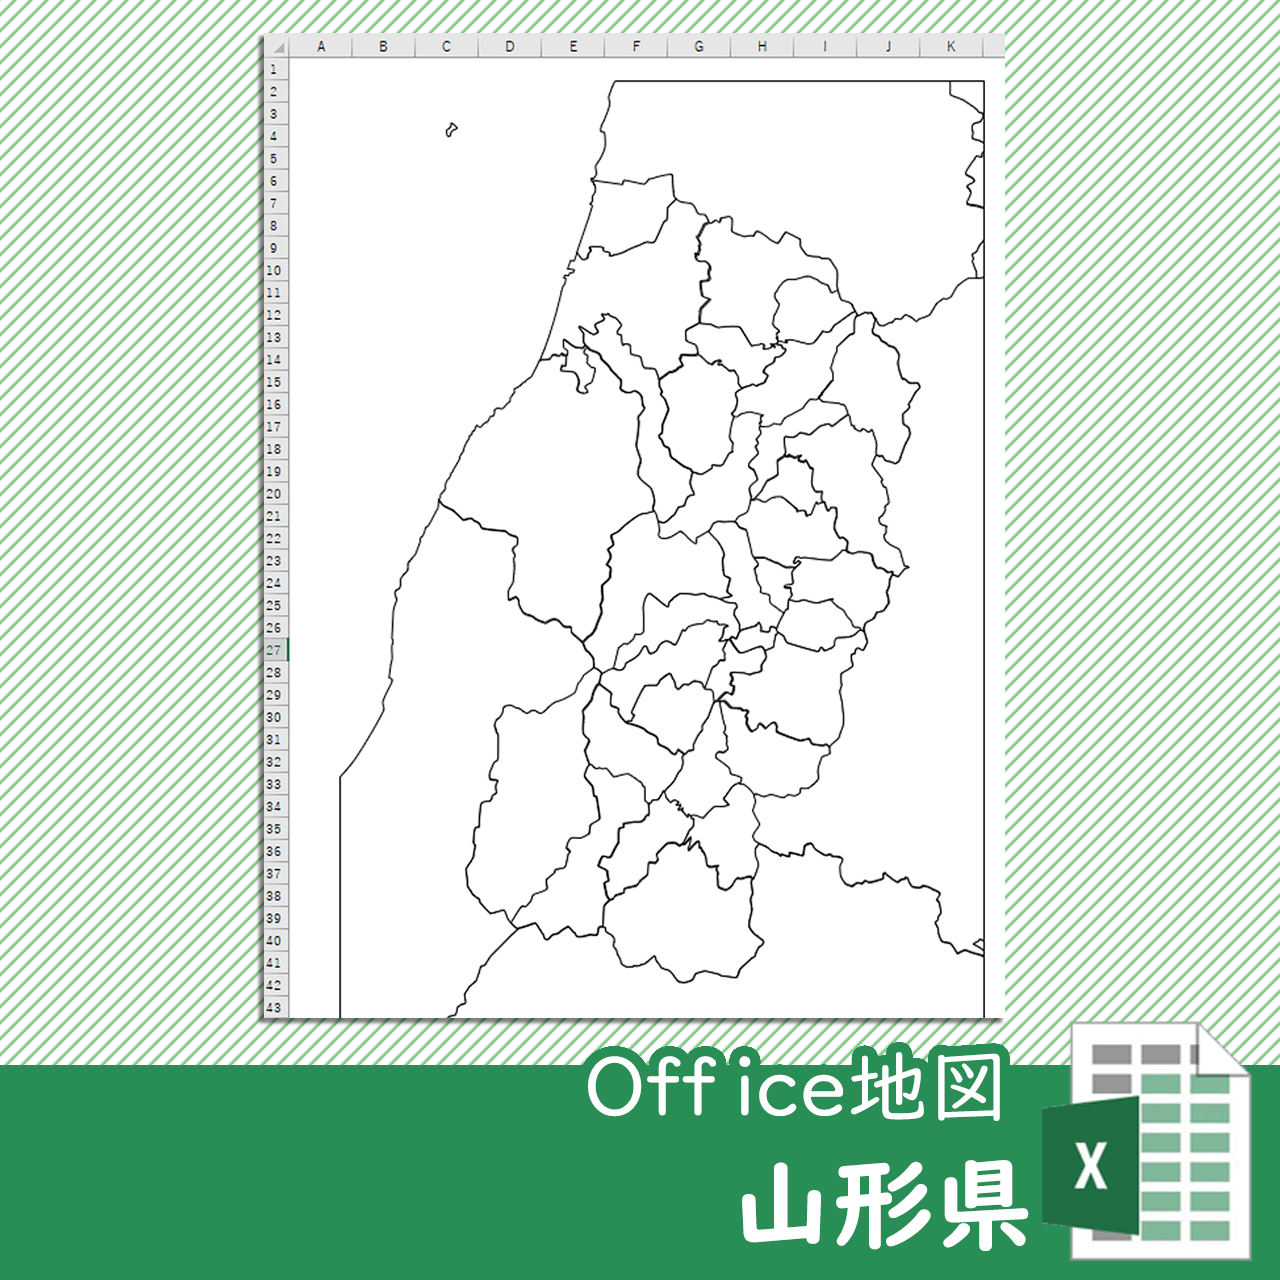 山形県のOffice地図のサムネイル